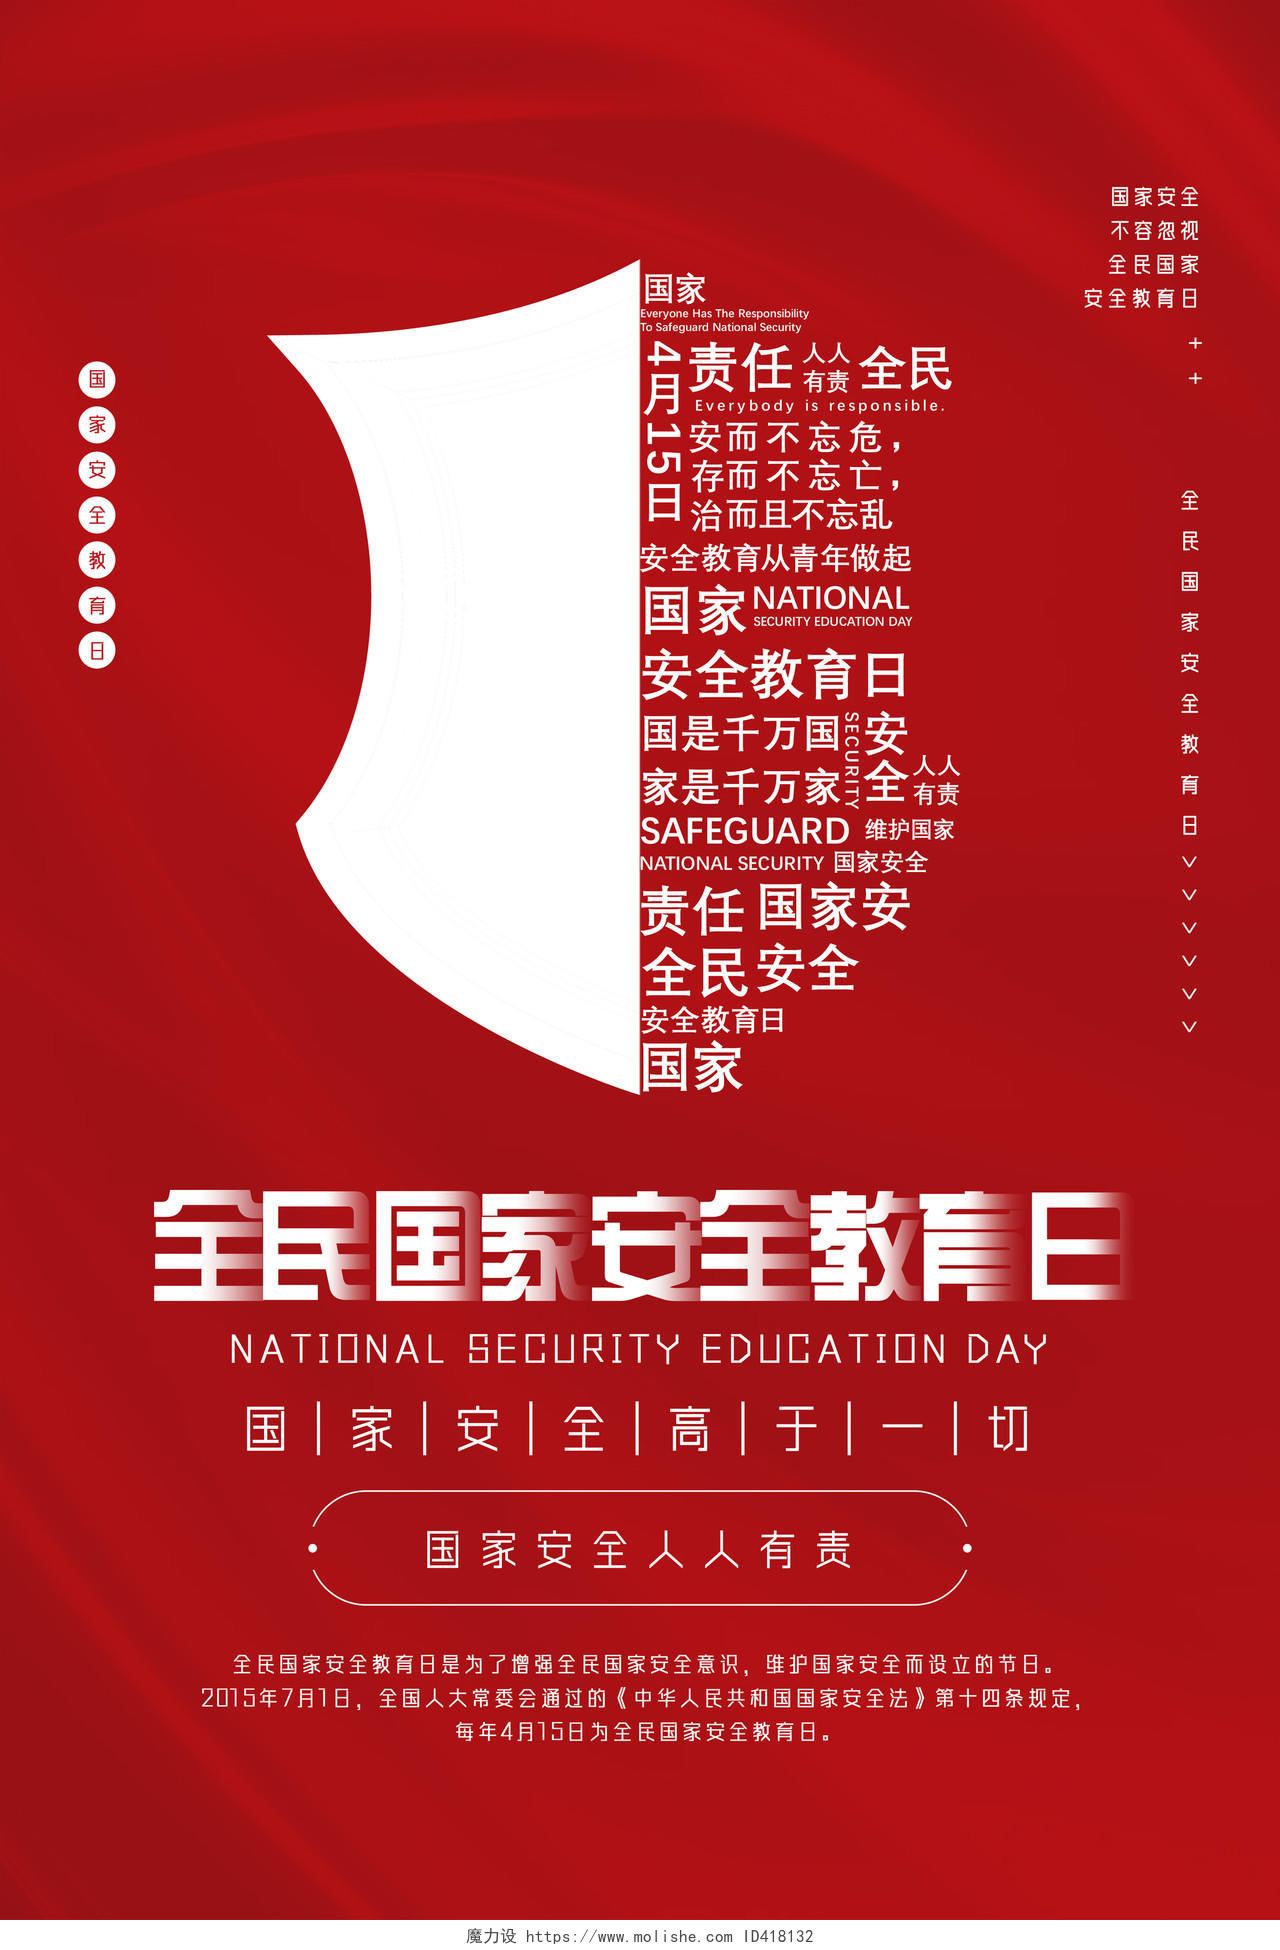 红色大气文字创意全民国家安全教育日海报中国全民国家安全教育日